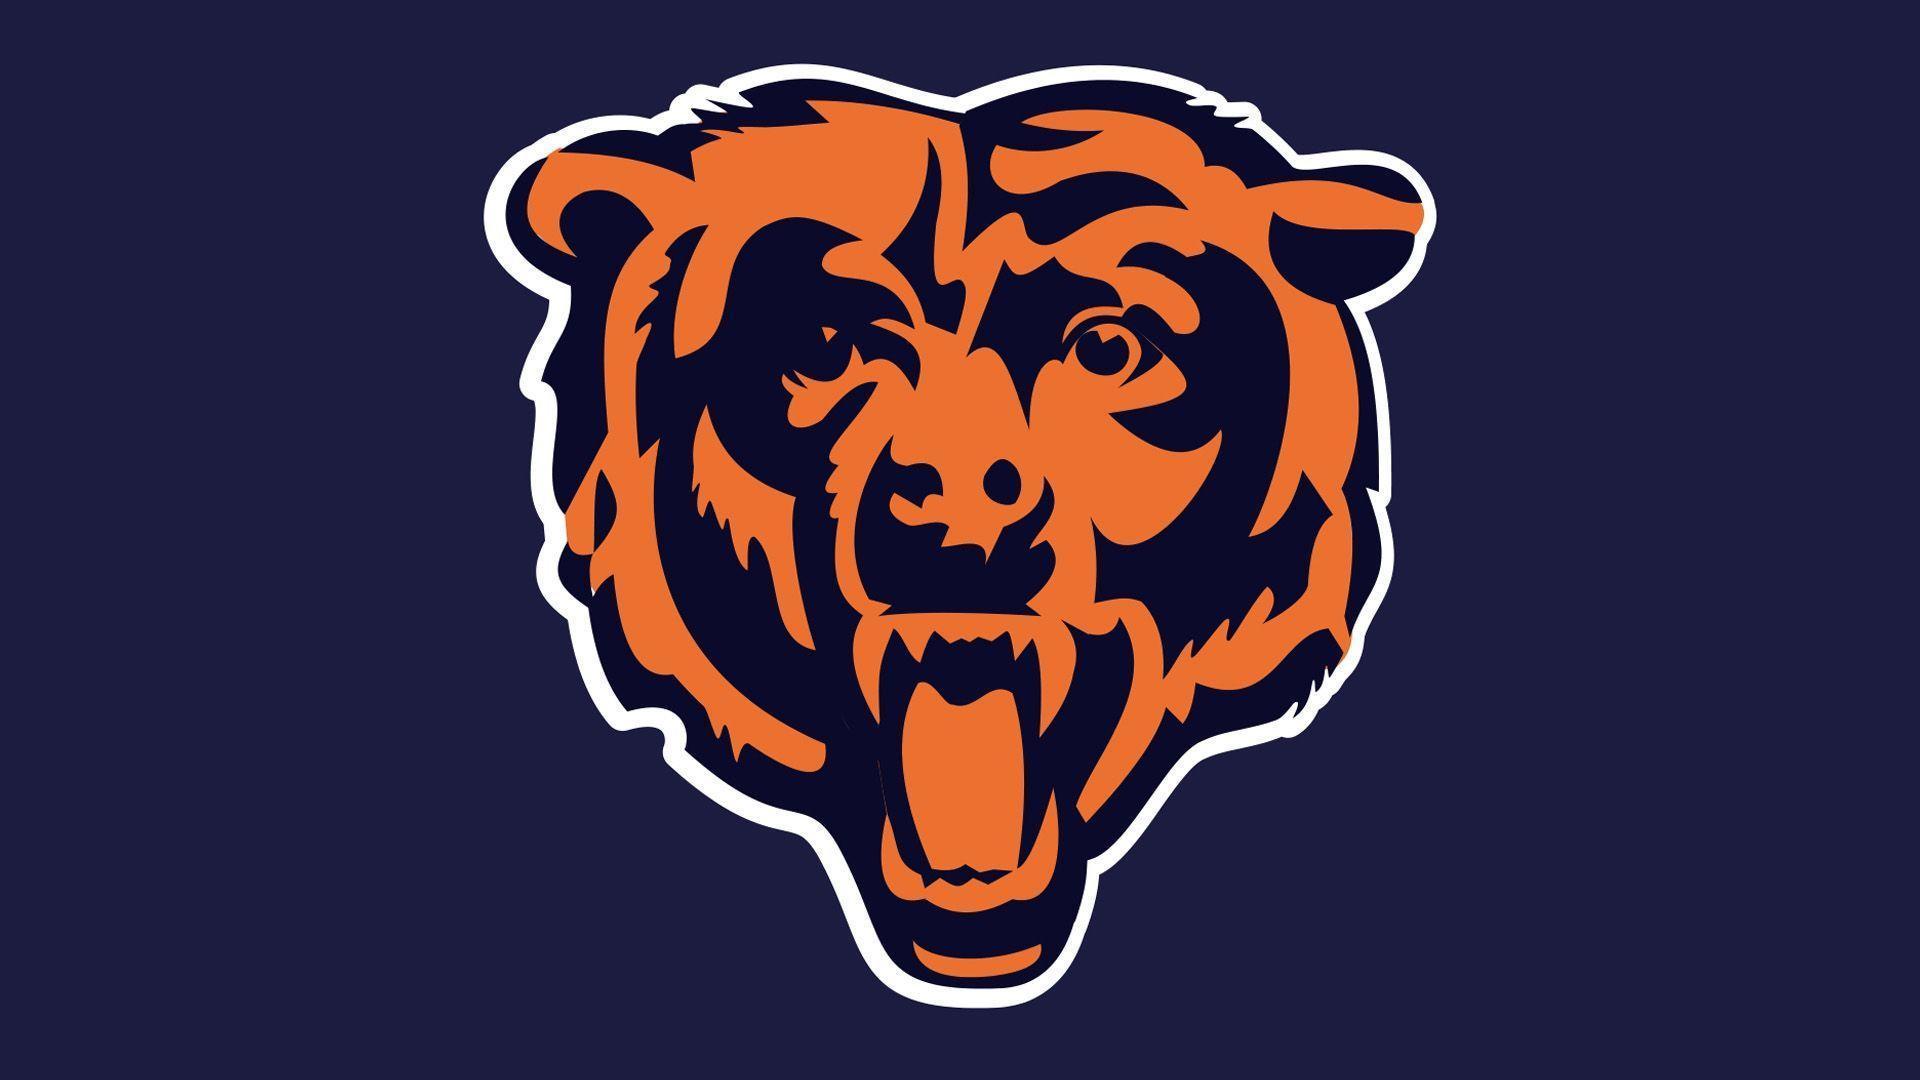 Chicago Bears wallpaper